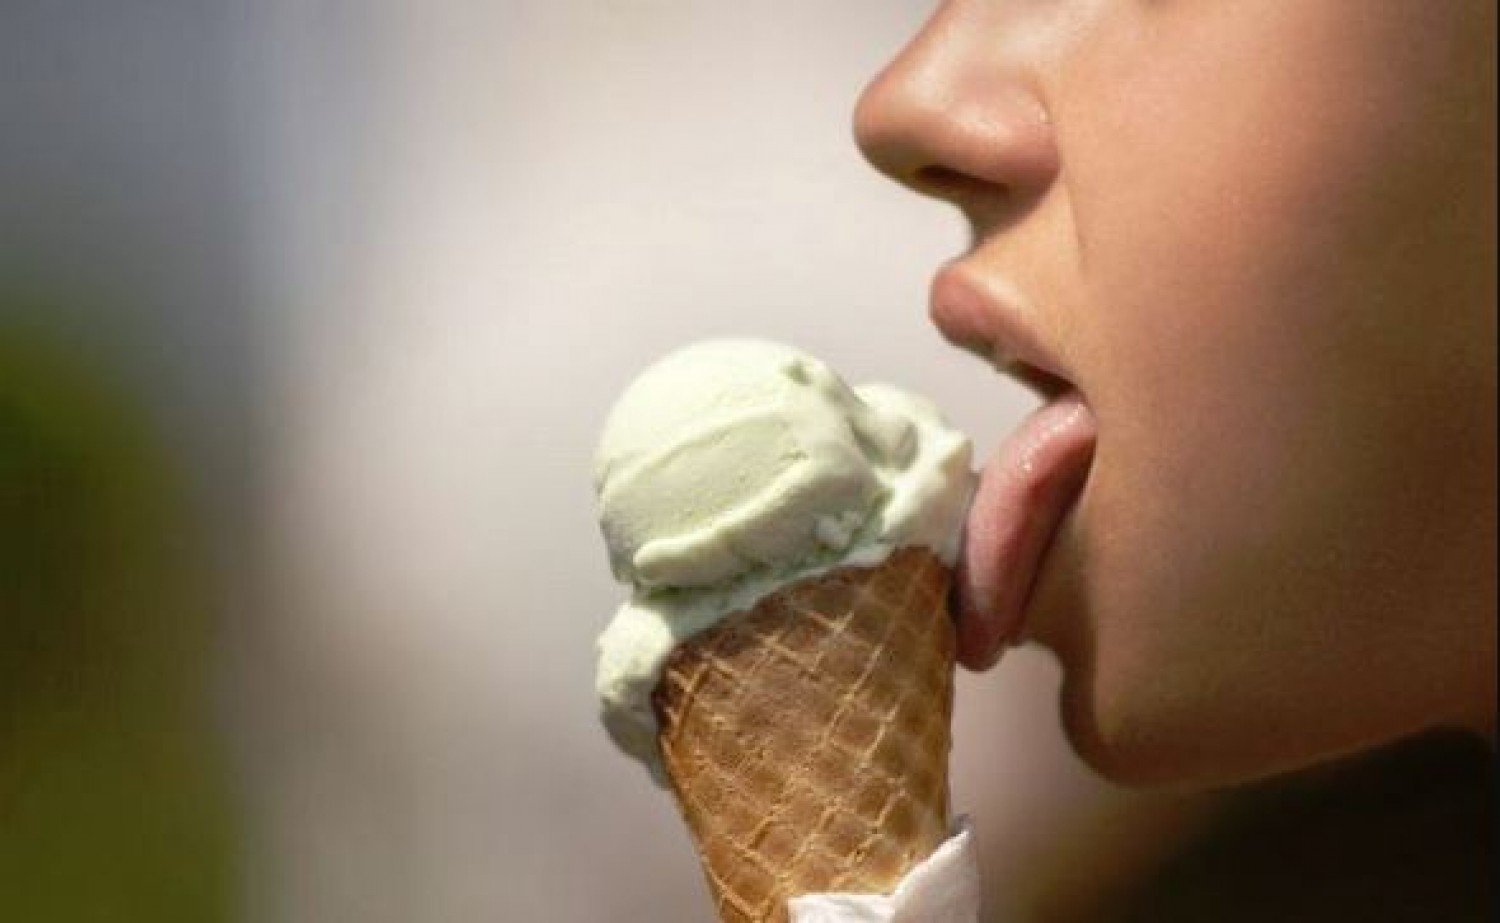 Meghalt egy 9 éves kislány, miután megevett egy fagylaltot